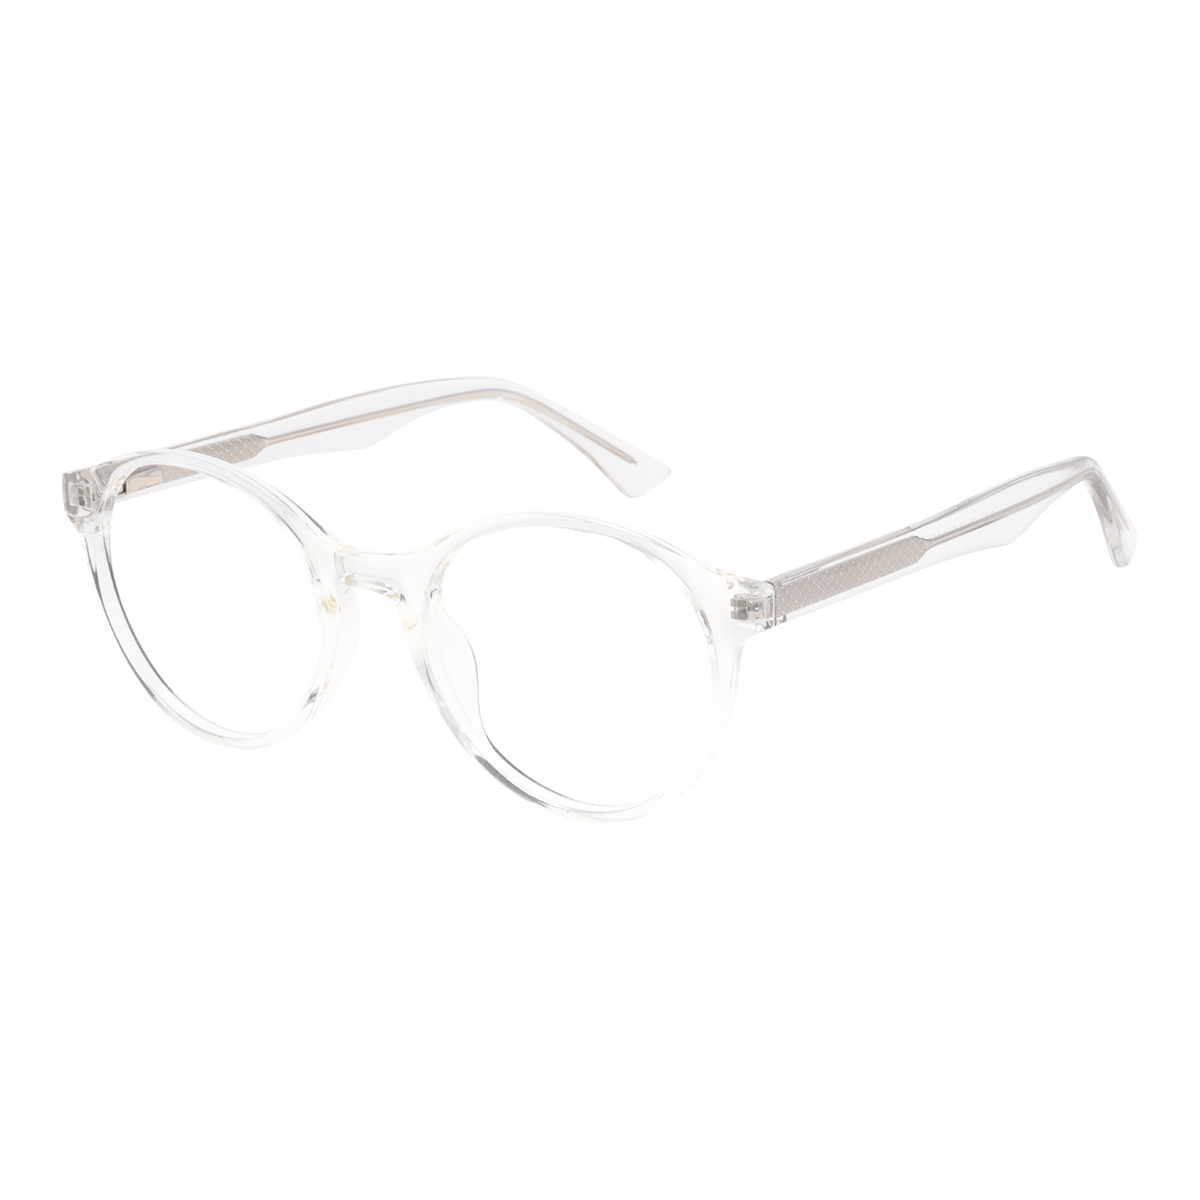 Delium - Round Transparent Reading Glasses for Women